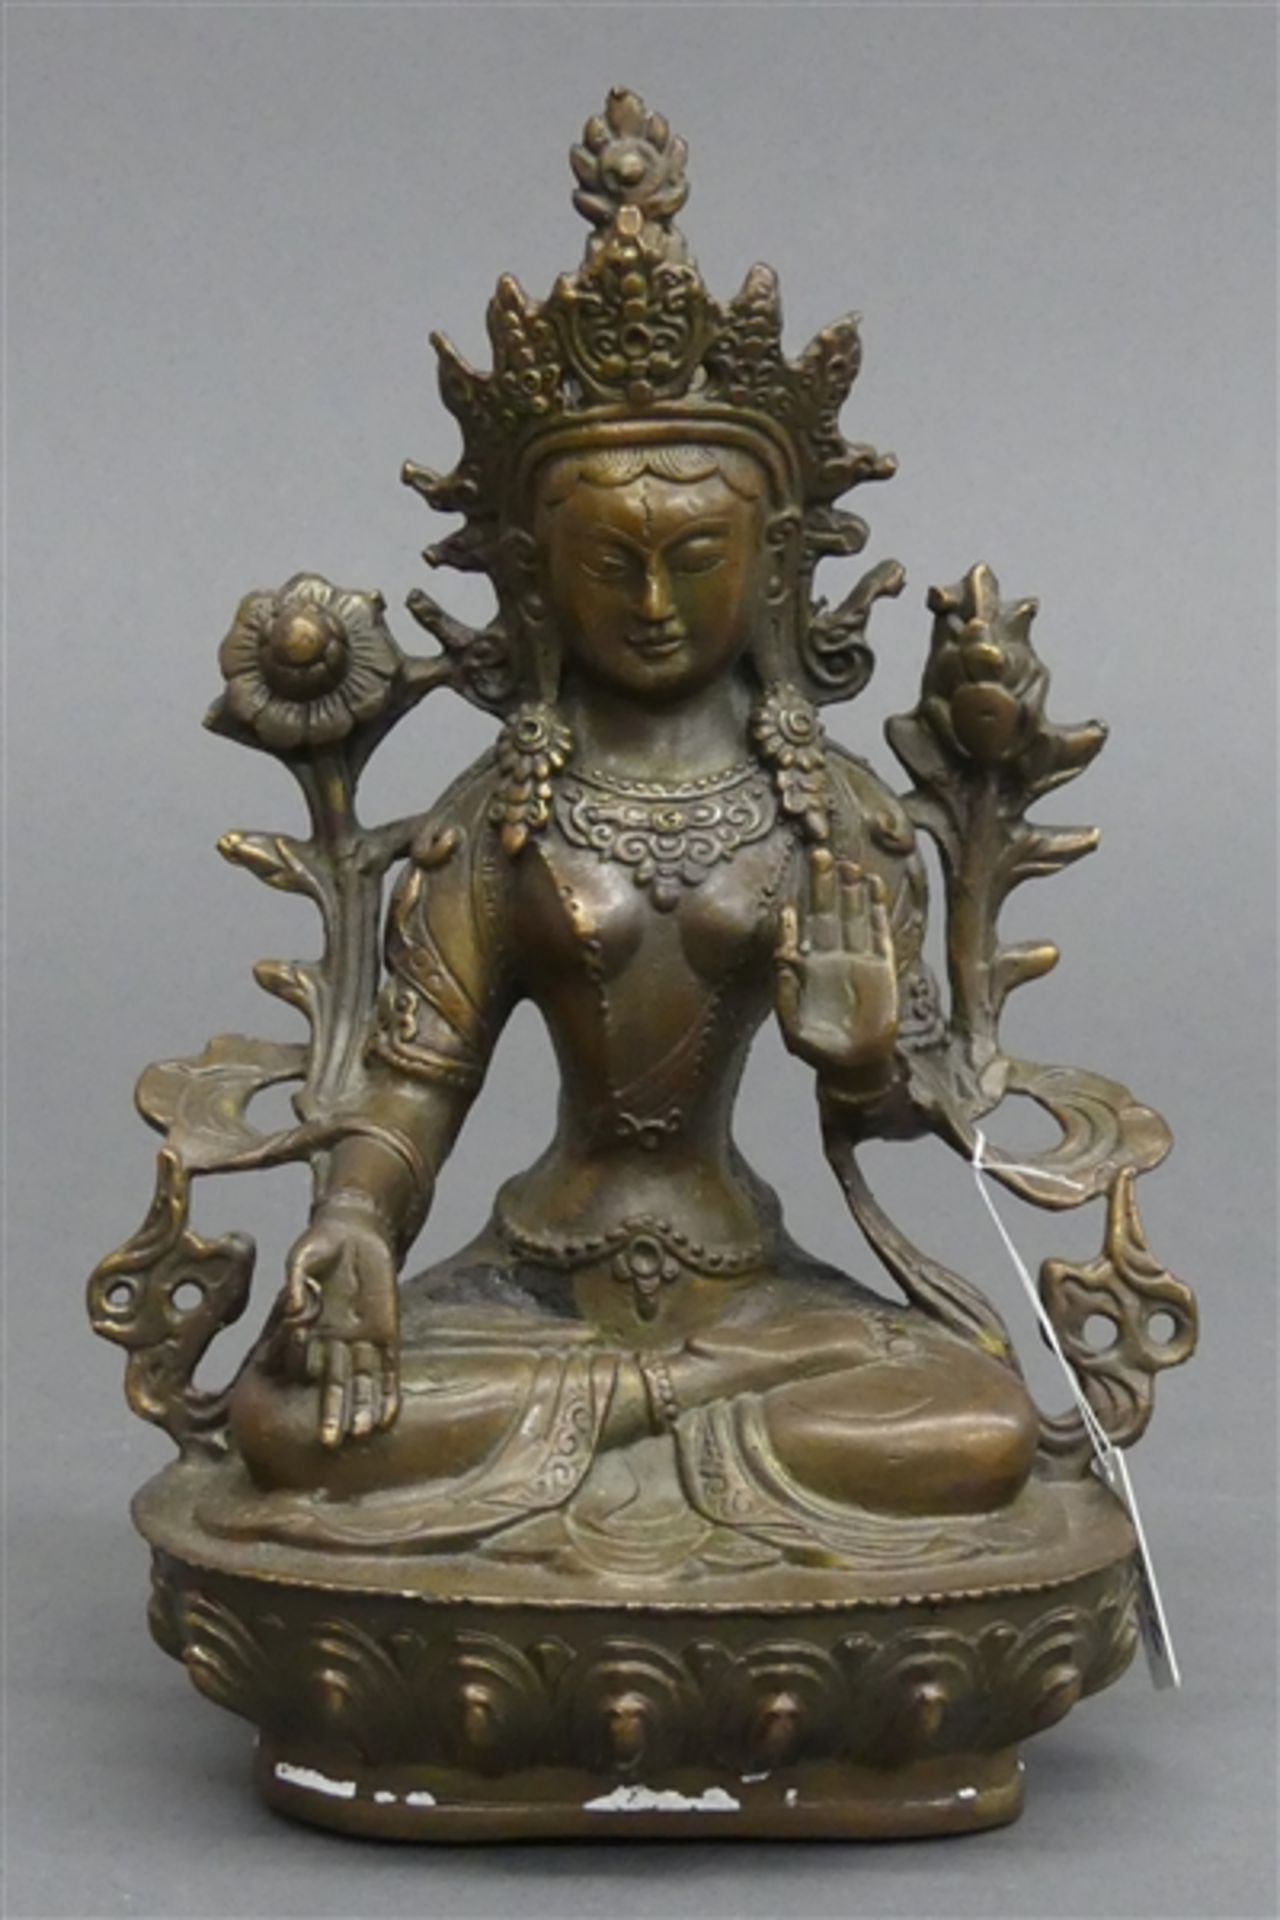 BronzeskulpturTibet, "Göttin Tara", durchbrochen gearbeitet, um 1900, h 21 cm,